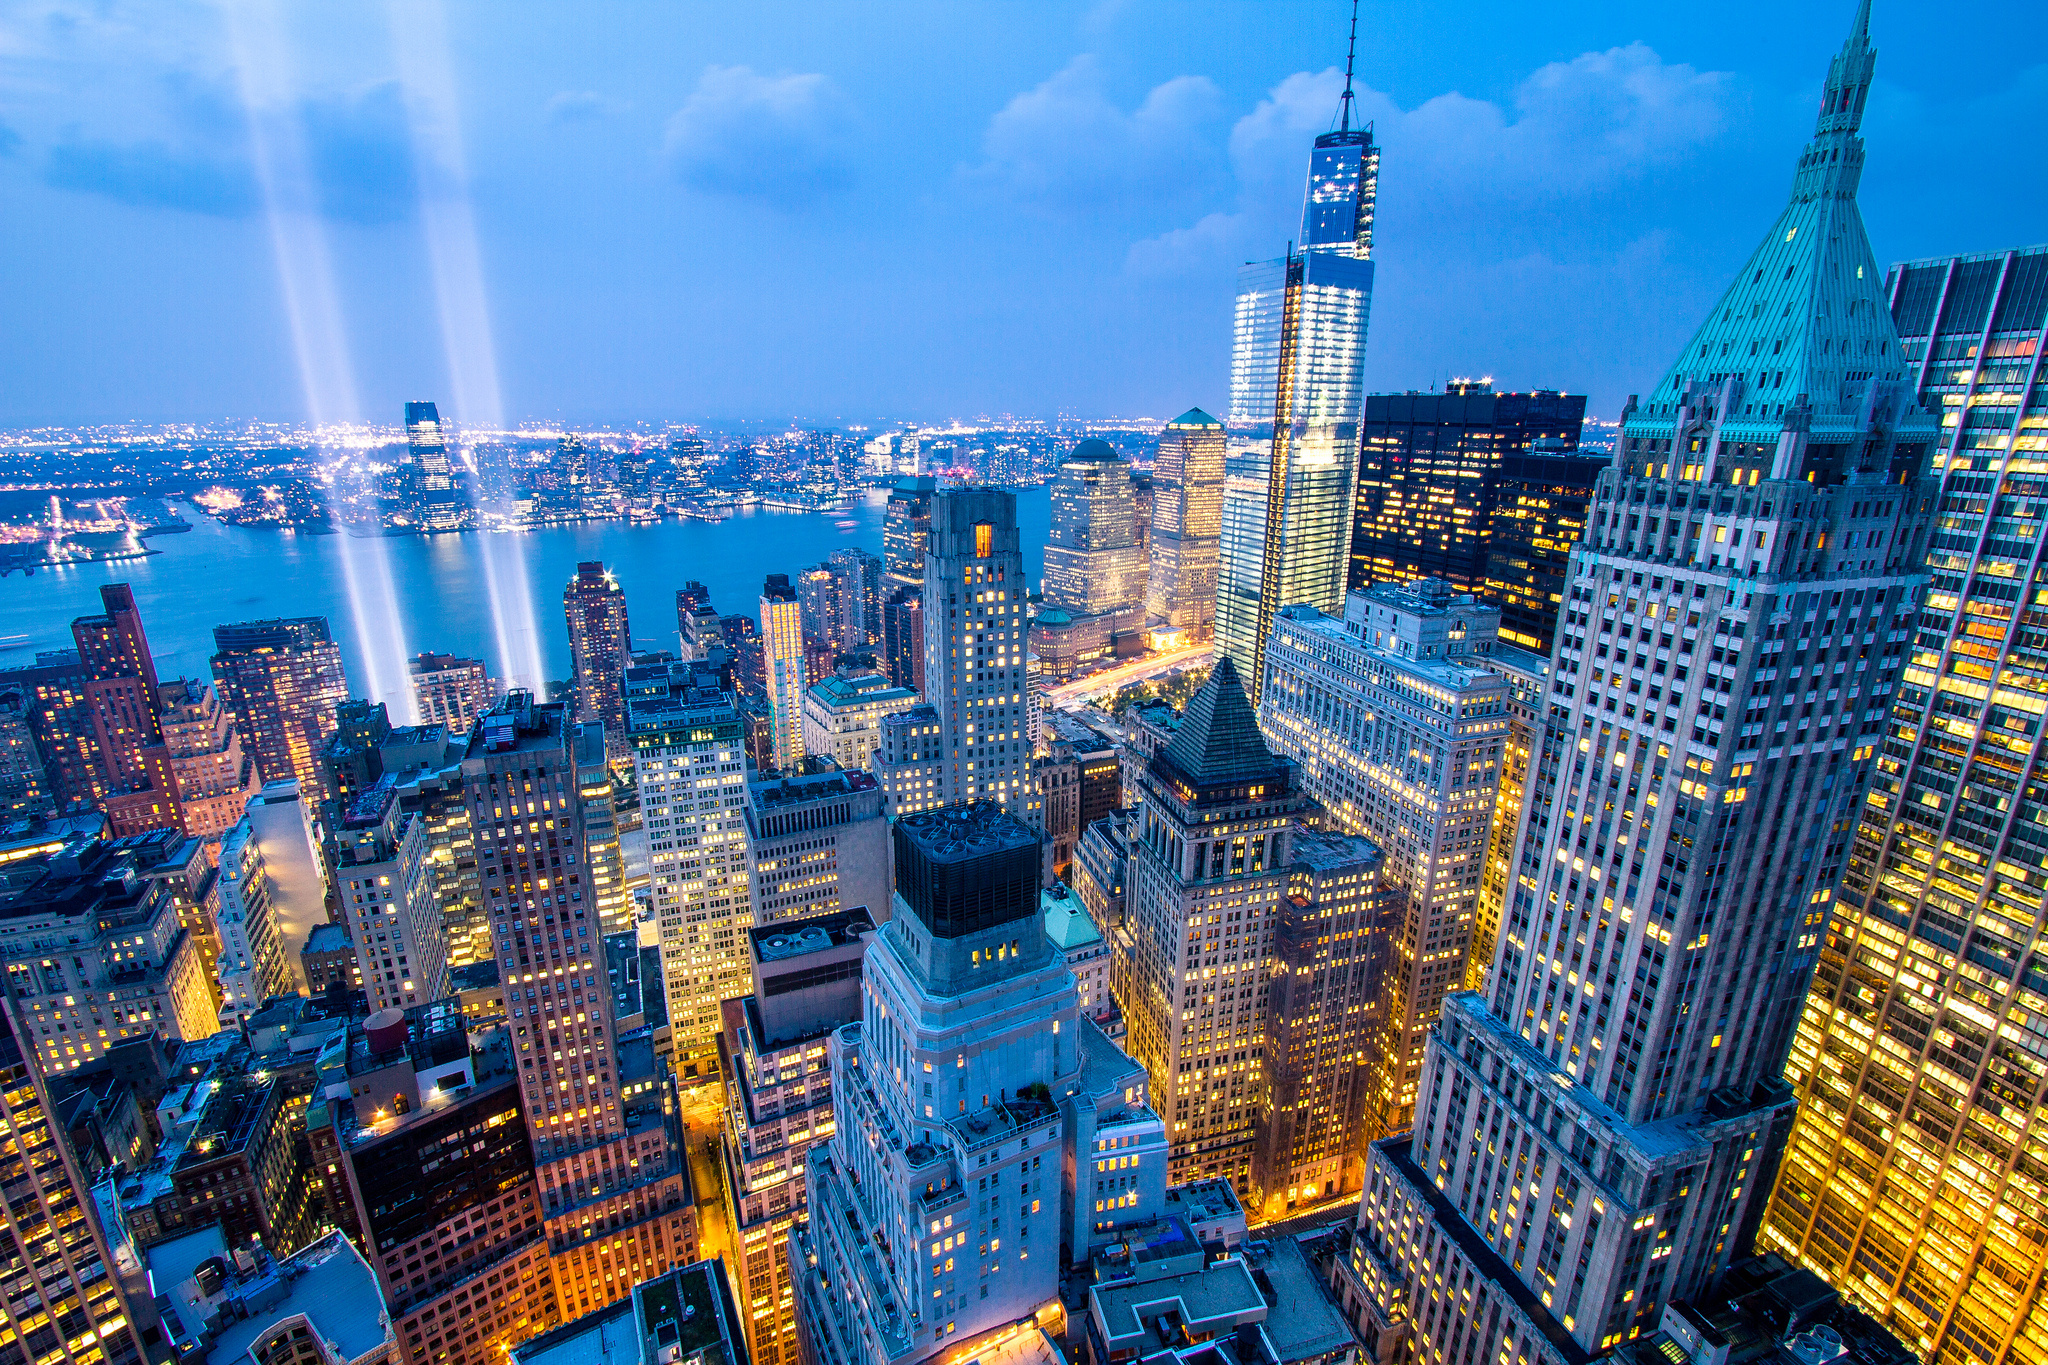 New York City luôn thu hút du khách với vẻ đẹp đêm còn rực rỡ hơn ban ngày. Gây ấn tượng từ cái nhìn đầu tiên với những địa điểm sáng ngời đầy thân quen. Hãy thưởng thức khoảnh khắc tuyệt vời này với hình nền máy tính đêm New York skyline tuyệt đẹp.